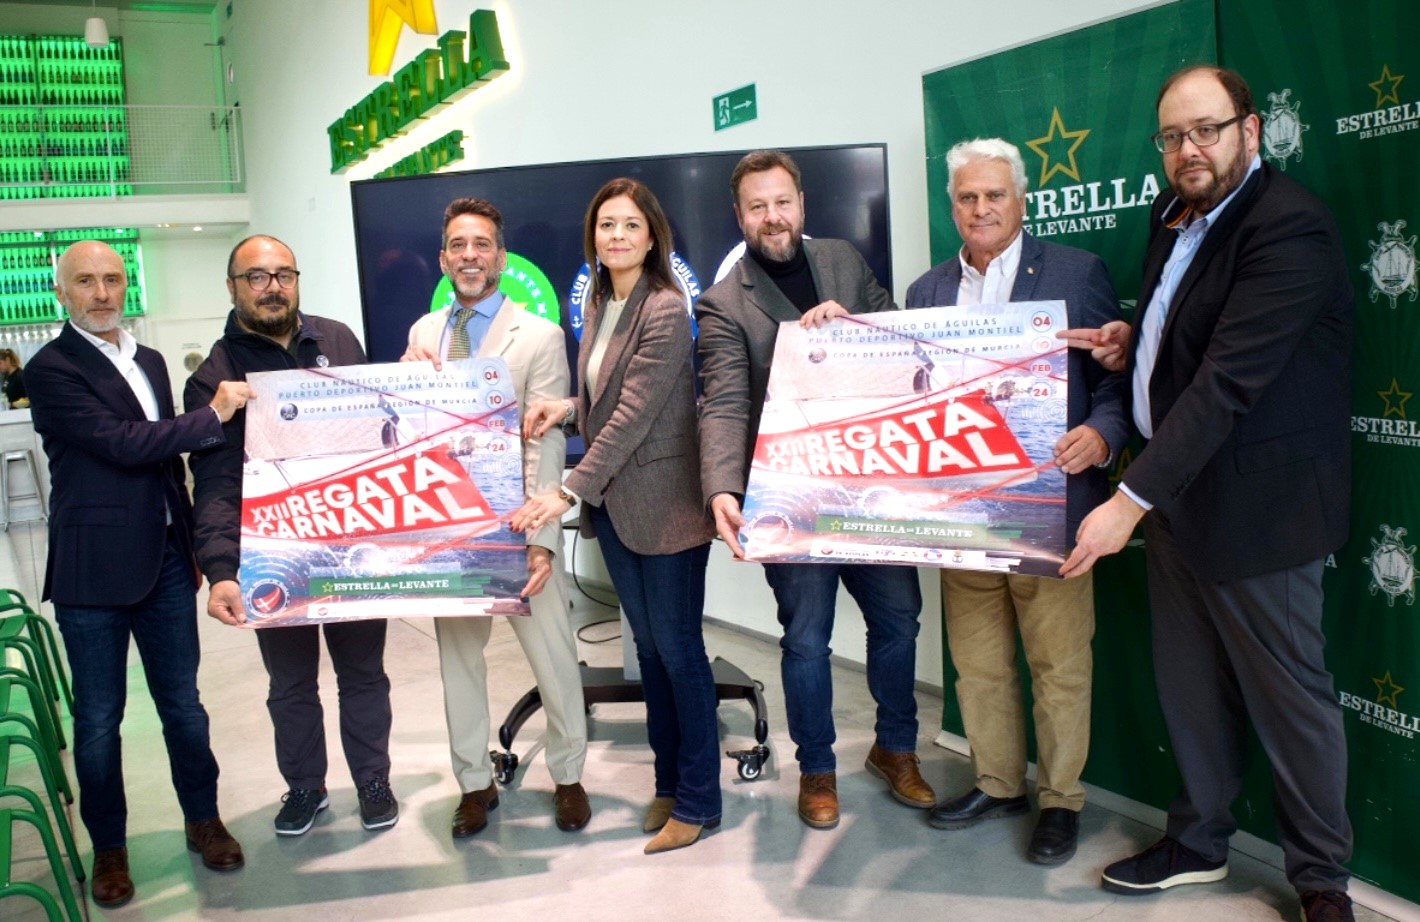 Presentada la XXII edición de la Regata de Carnaval - XI Trofeo Estrella de Levante